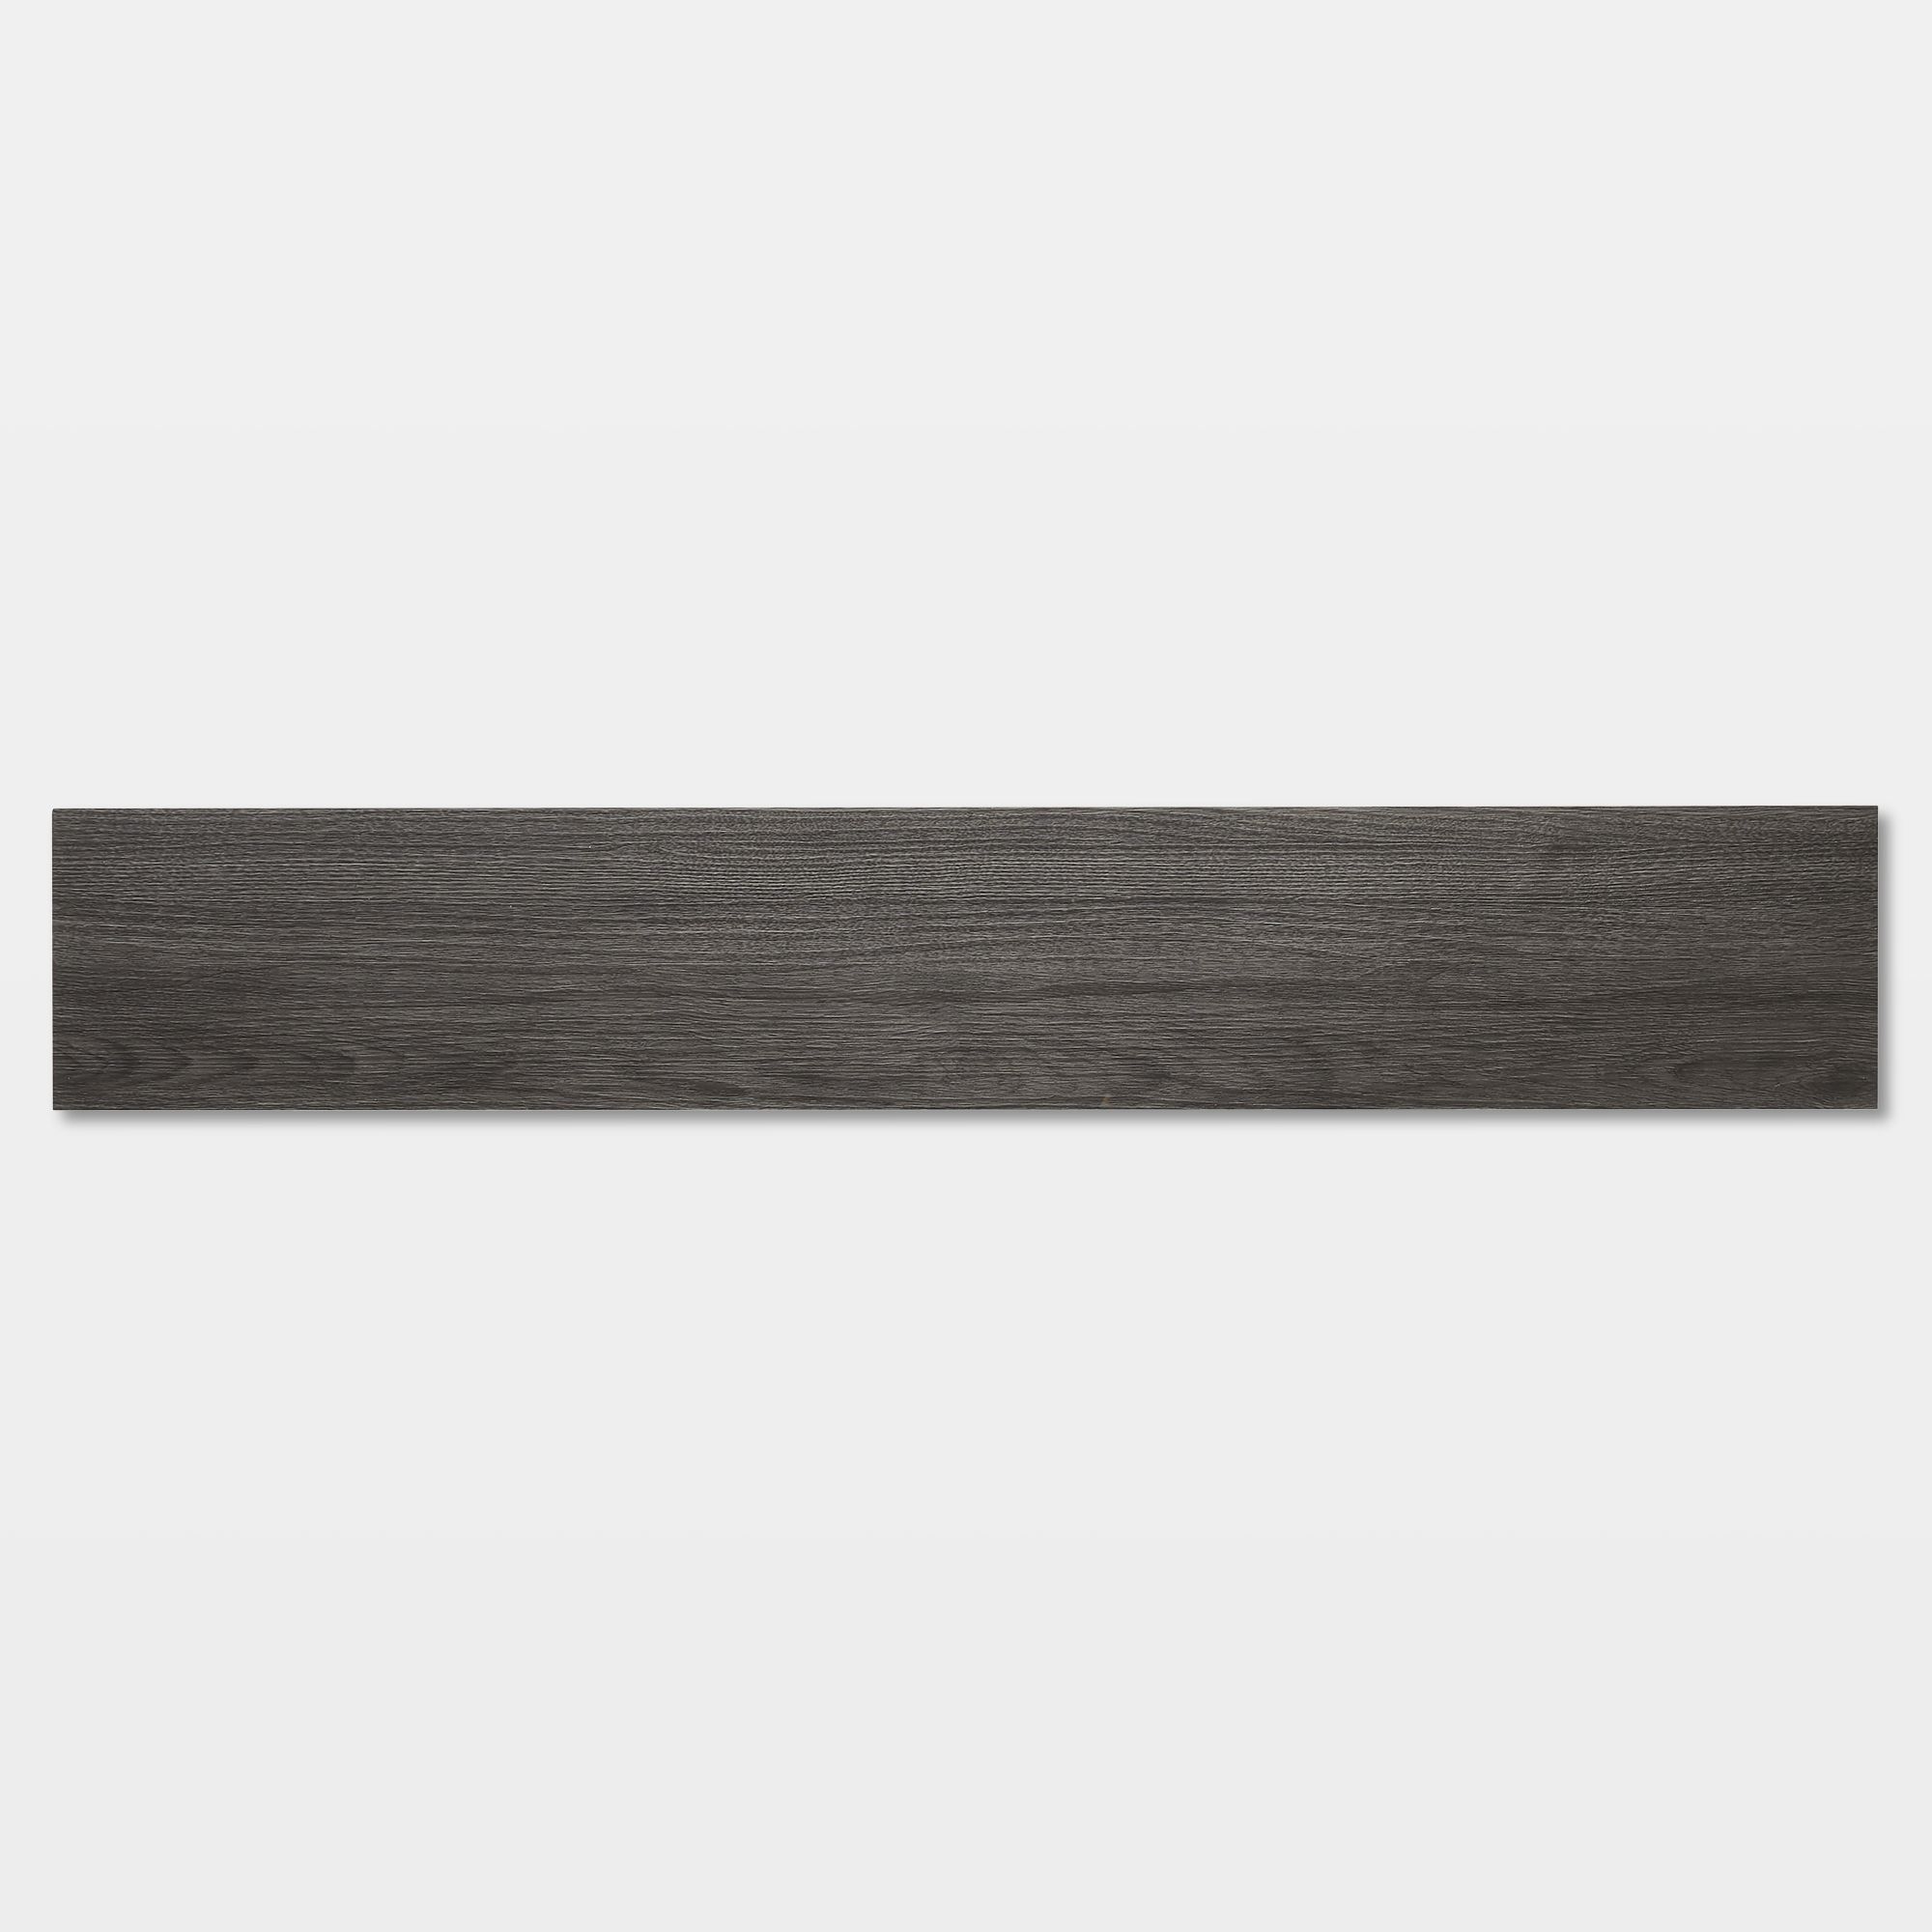 GoodHome Poprock Dark grey Wood planks Wood effect Self-adhesive Vinyl plank, Pack of 7